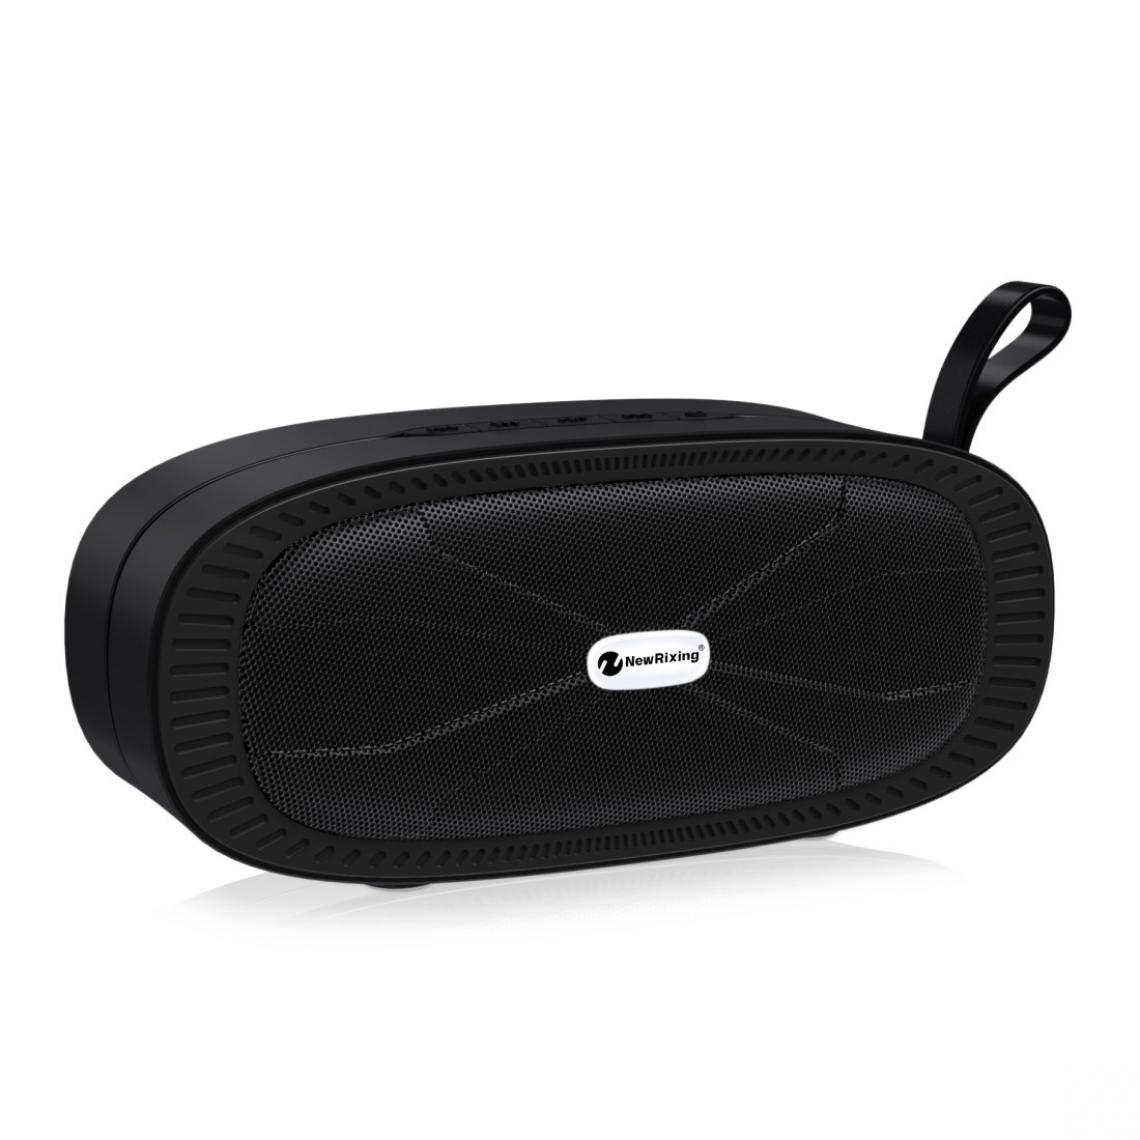 Wewoo - Enceinte Bluetooth NR4022 Haut-parleur portable stéréo avec barre de son surround microphonecarte Micro SD de soutien FM Noir - Enceintes Hifi